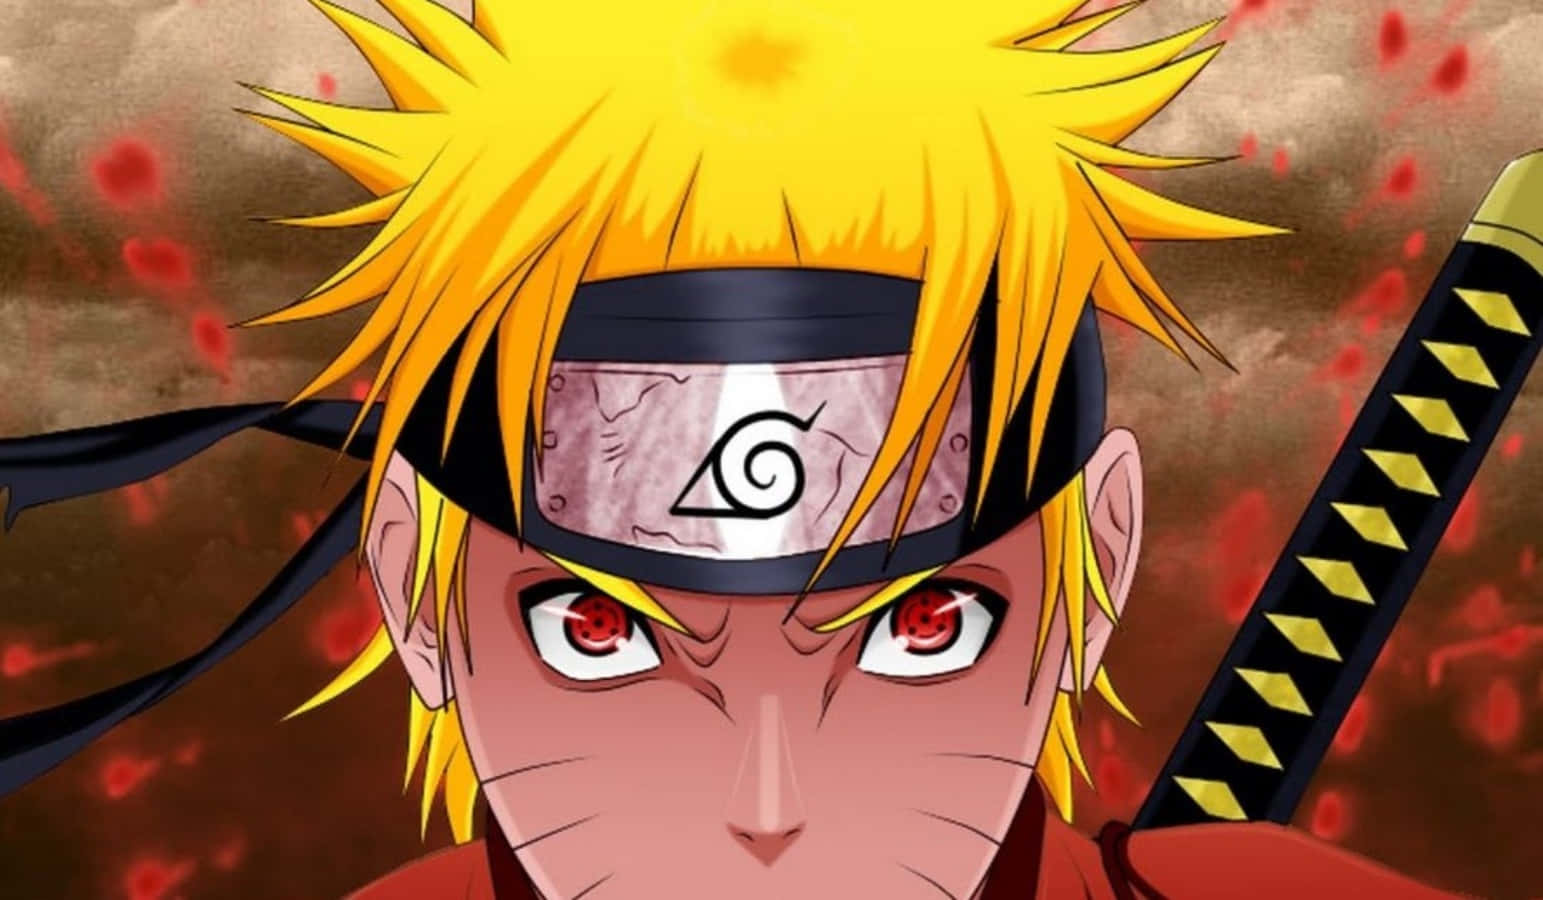 Download Naruto Profile Picture 1543 x 900